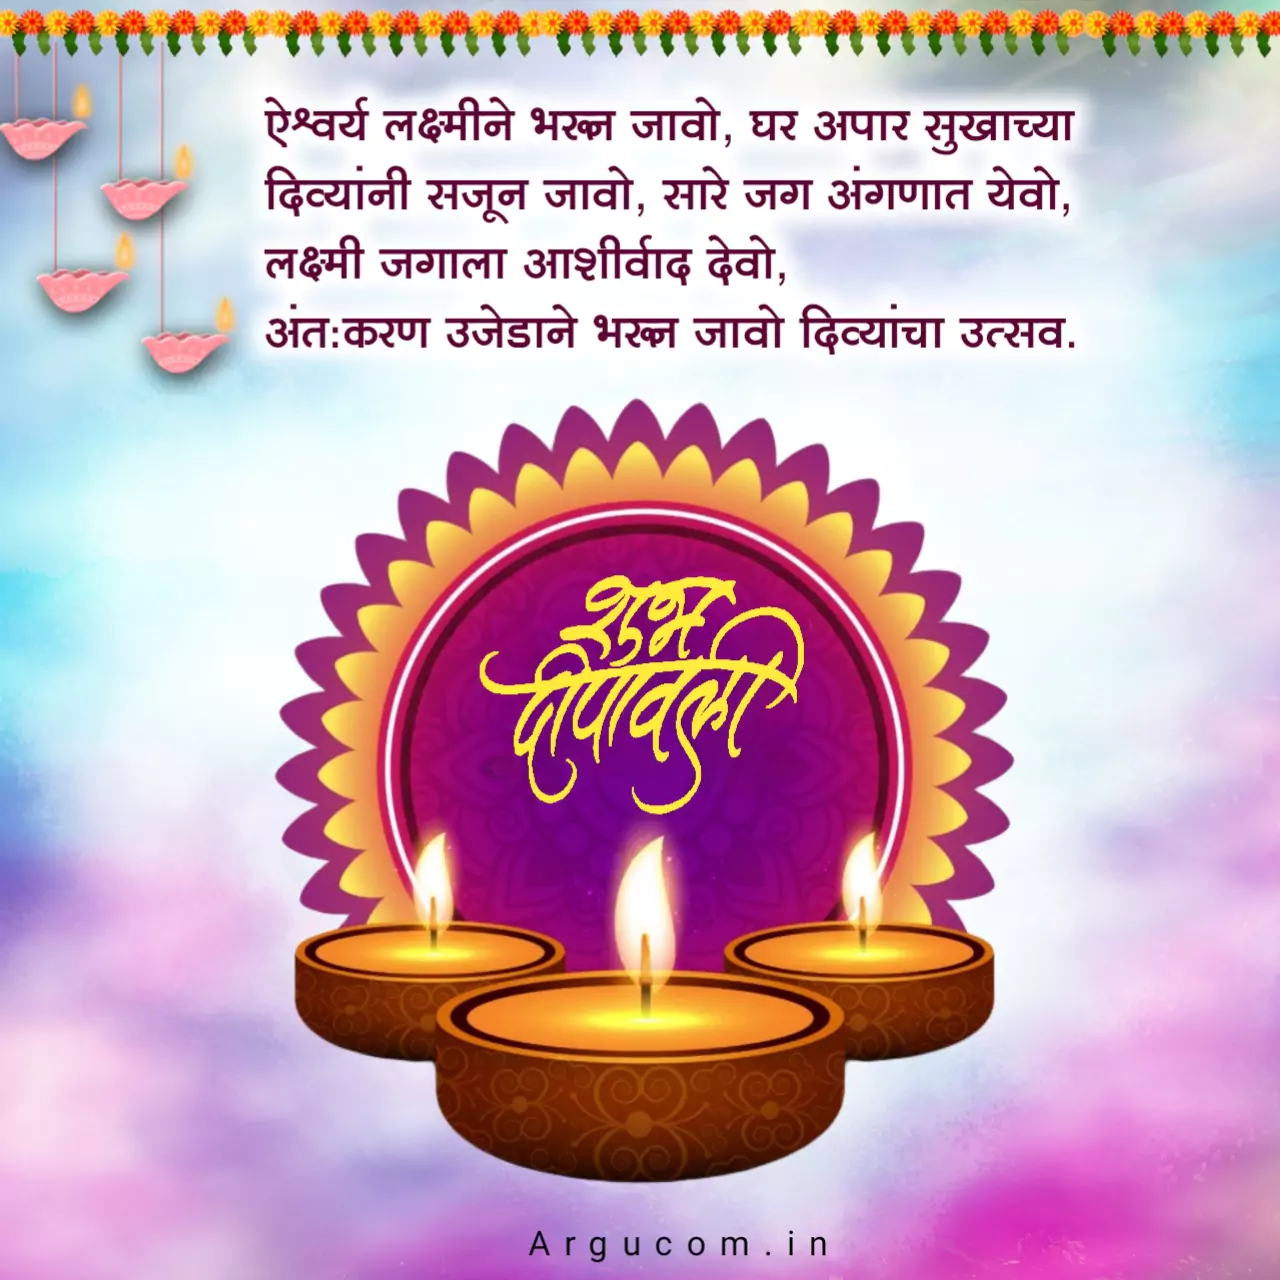 diwali wishes in marathi 